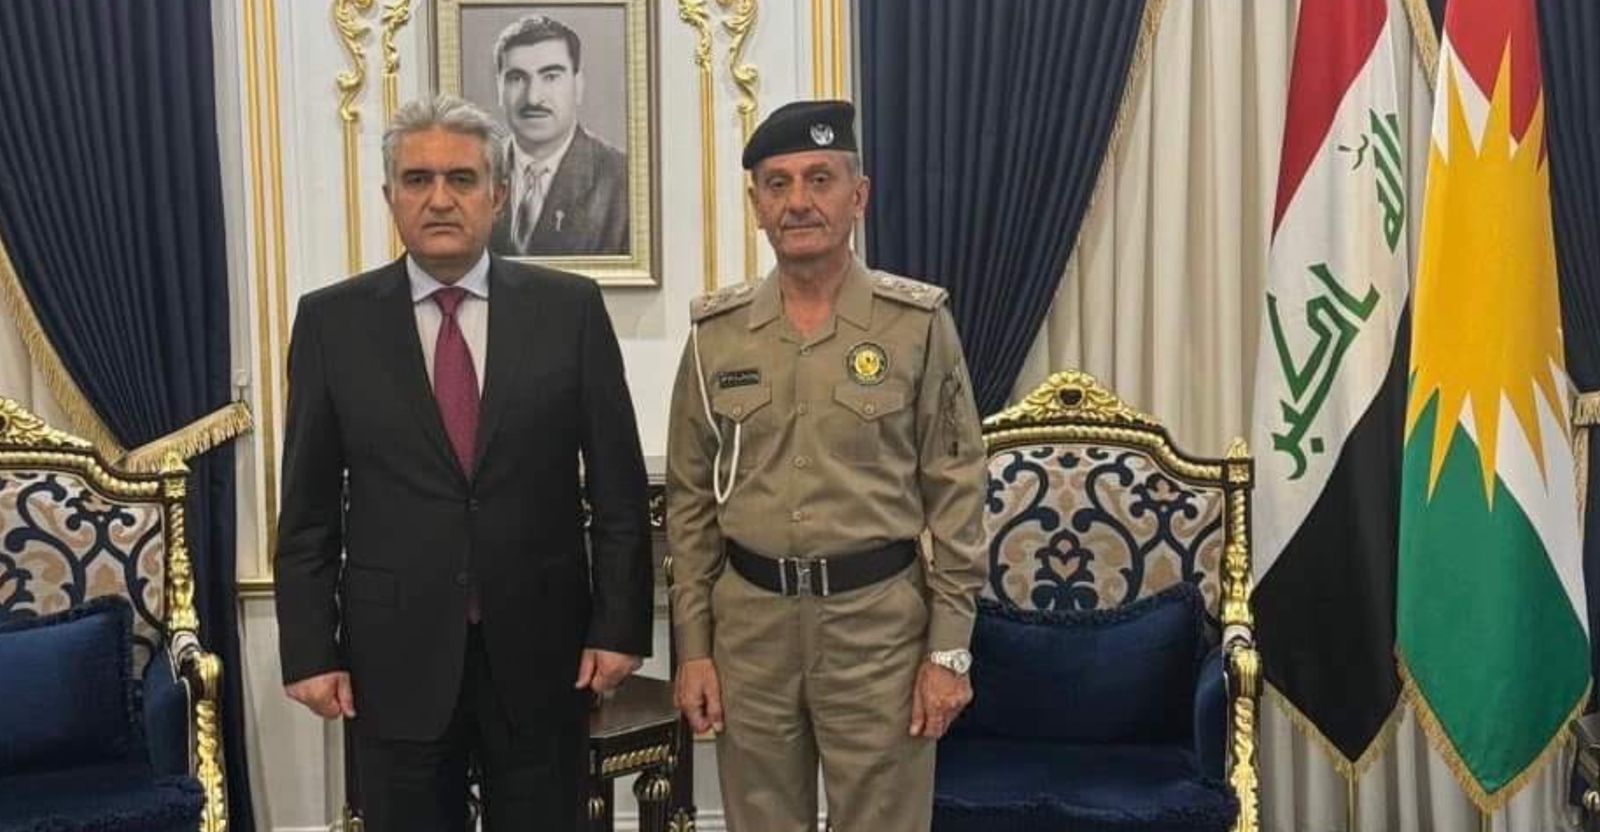 داخلية كوردستان تسمي مديراً جديداً لشرطة السليمانية وتحثه على دور أمني خاص